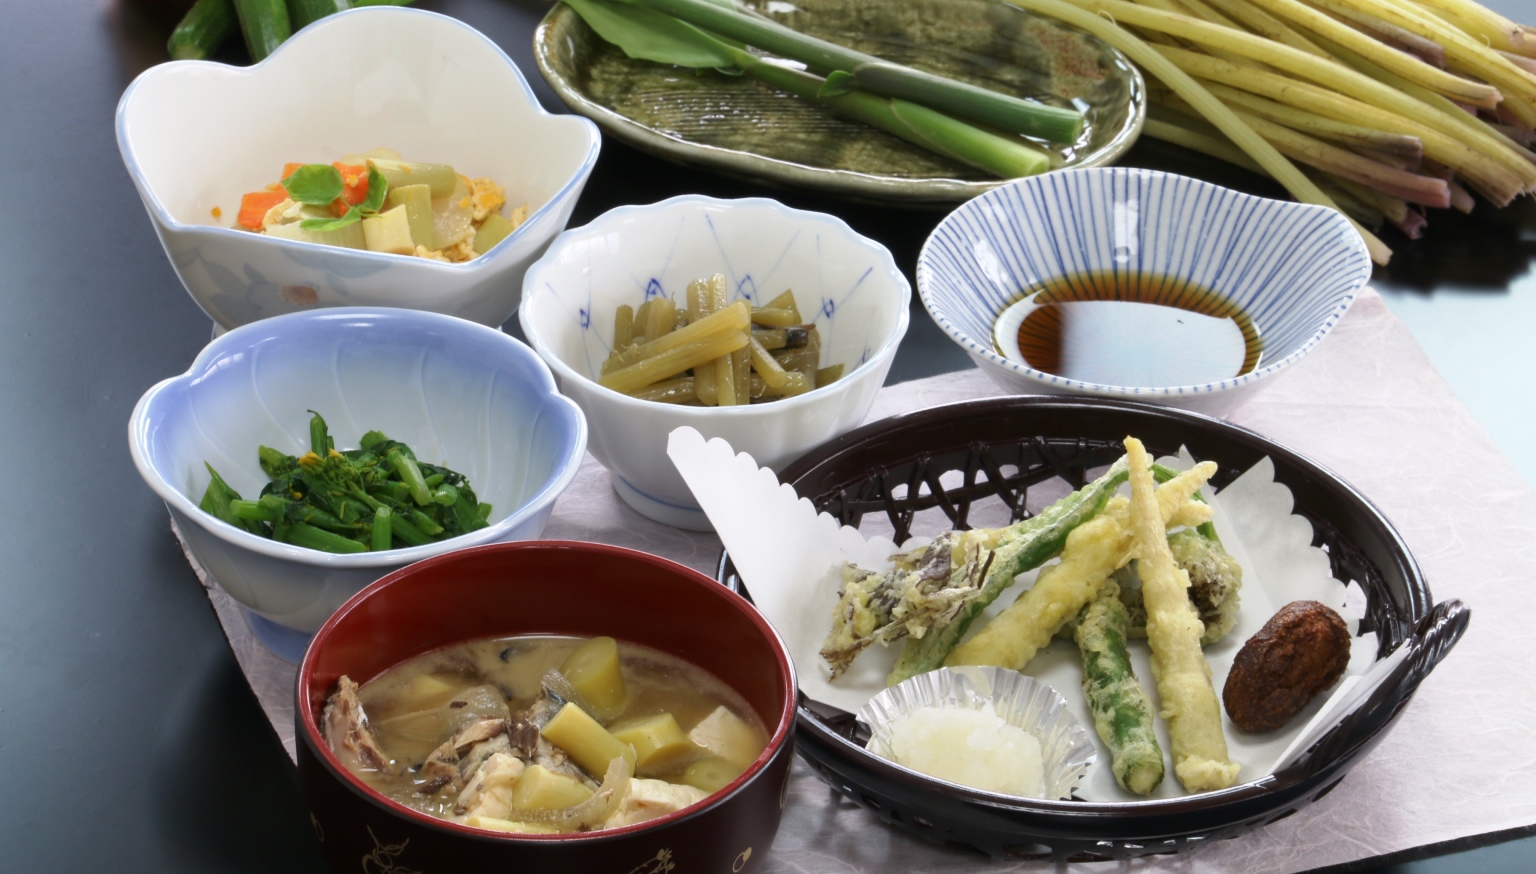 とても美味しい♪根曲がり竹&山菜 料理♪旬の山の恵みを堪能しよう